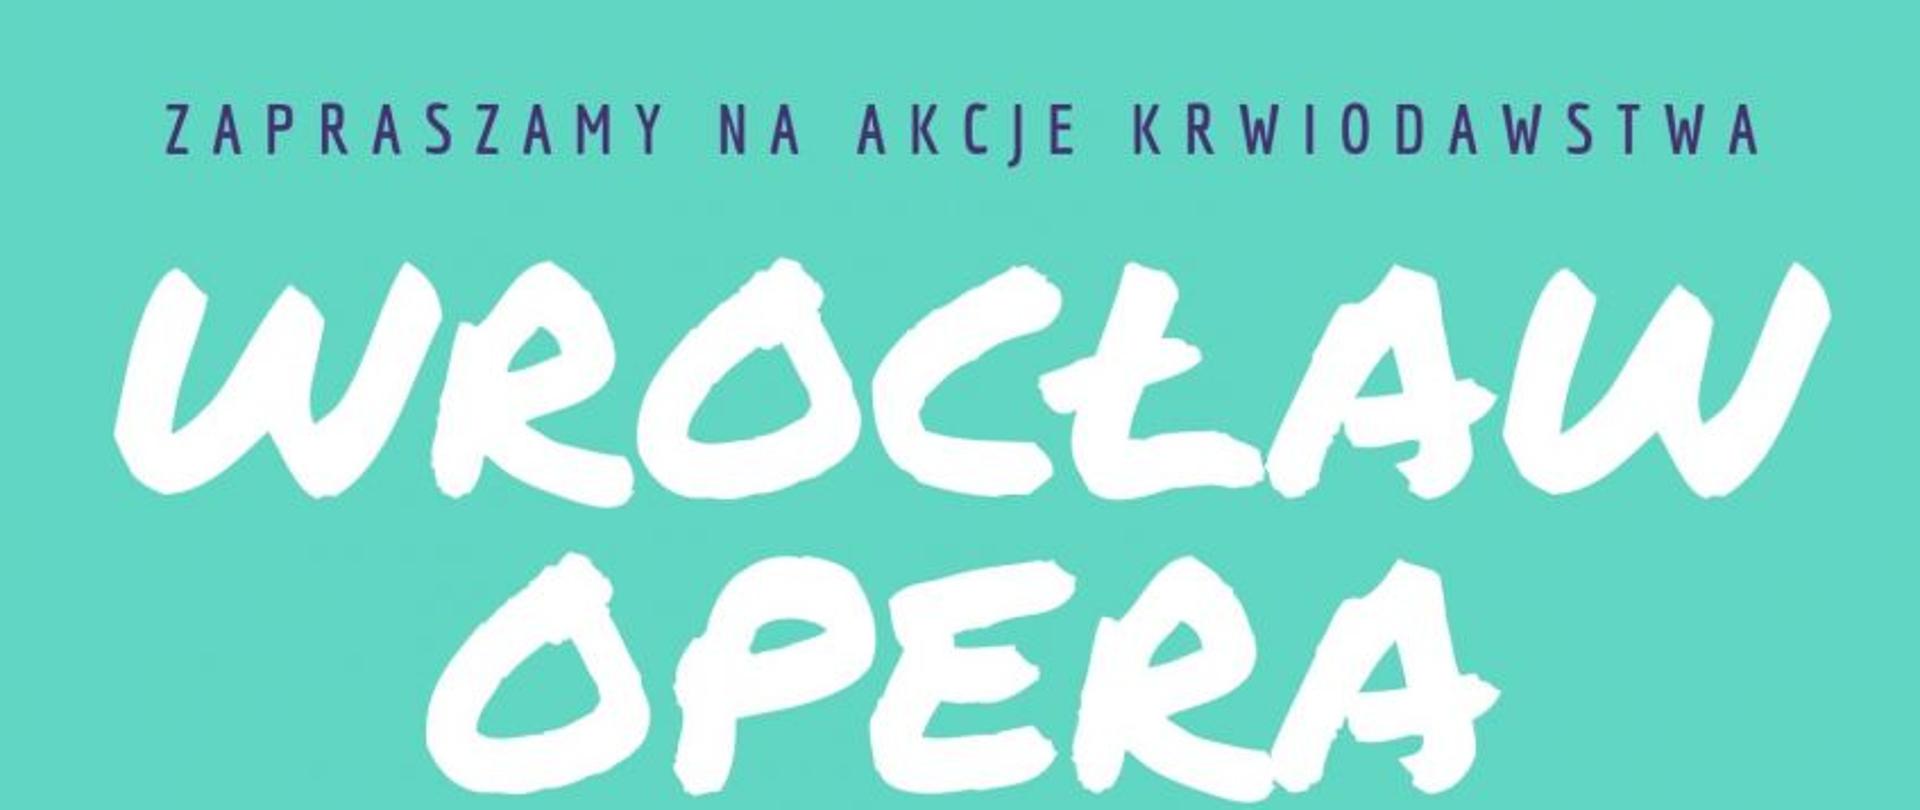 Akcja "Kropelka" przed gmachem Opery Wrocławskiej - 24.08.2019 r.